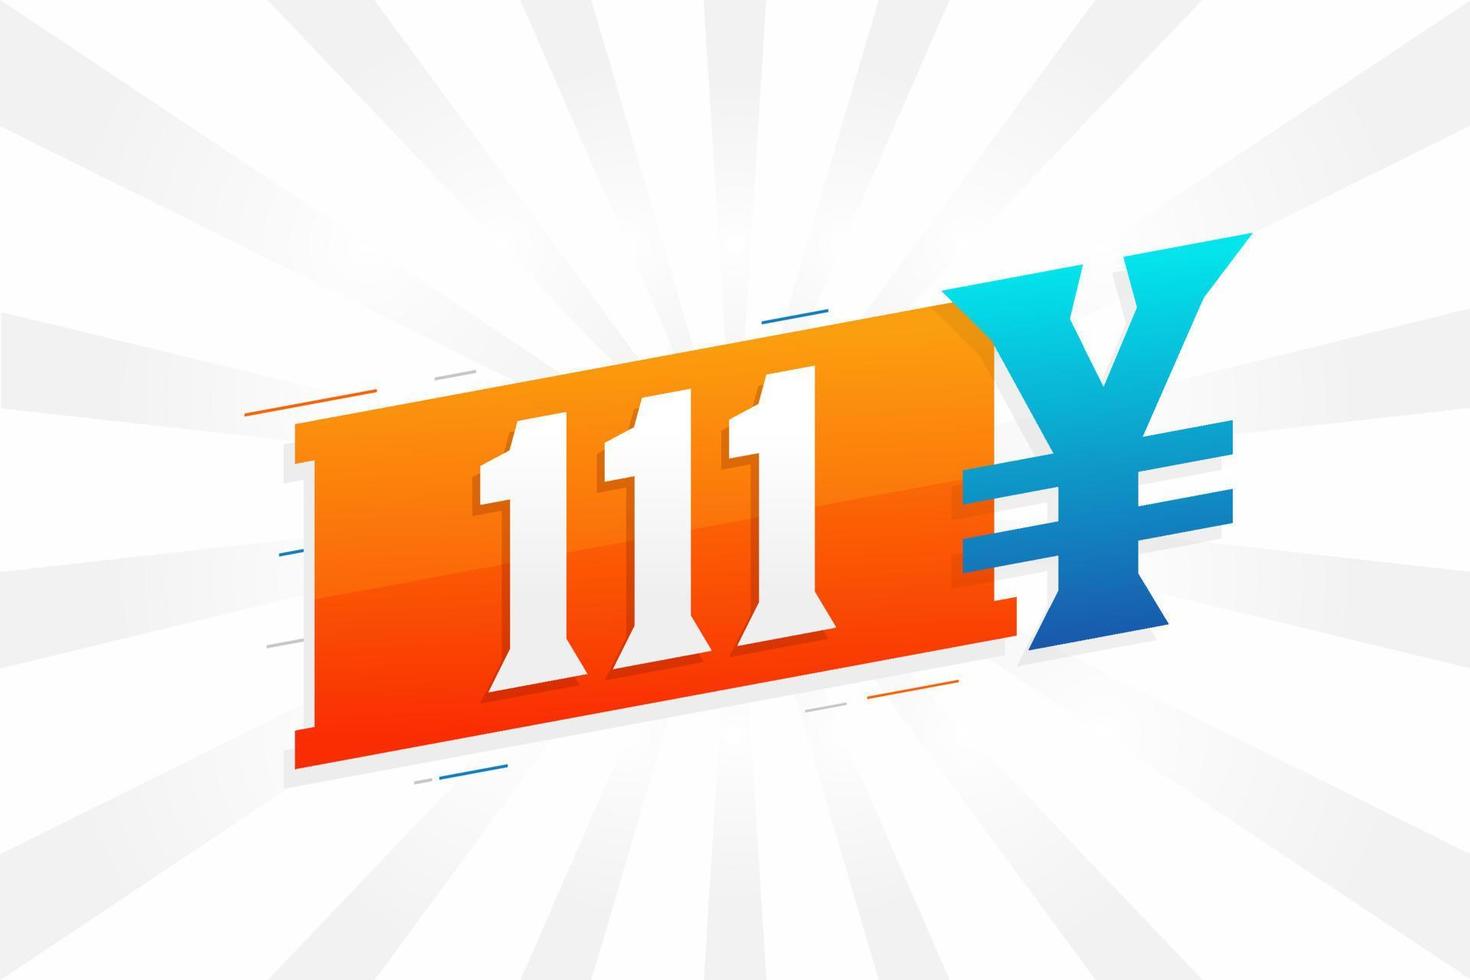 111 Yuan chinesische Währung Vektortextsymbol. 111 Yen japanische Währung Geld Aktienvektor vektor